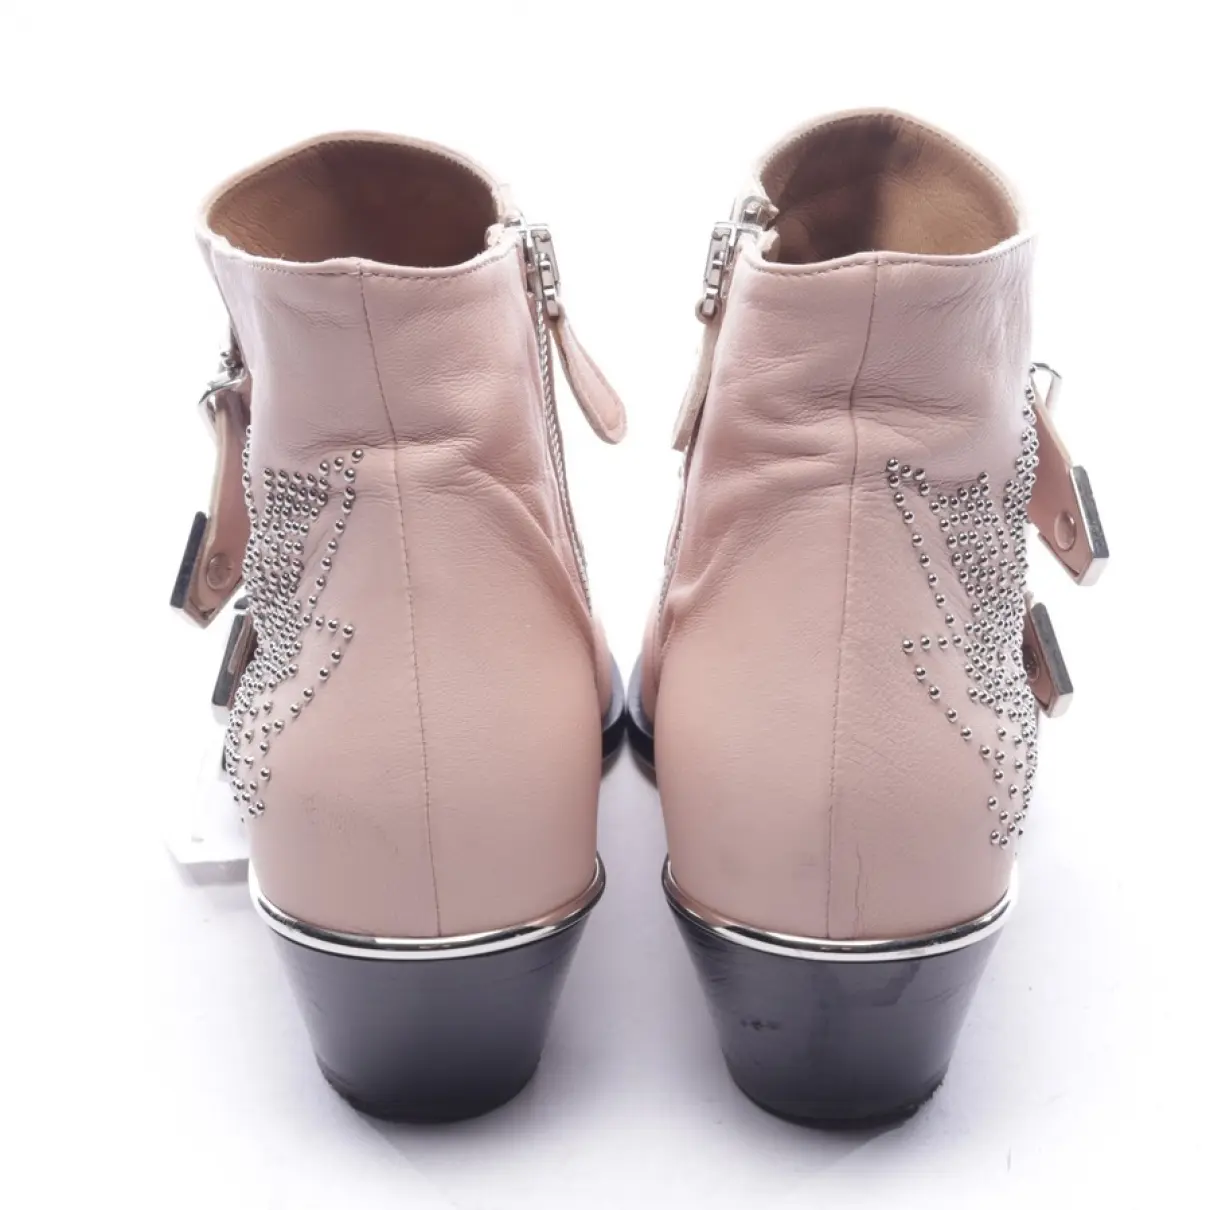 Susanna leather western boots Chloé